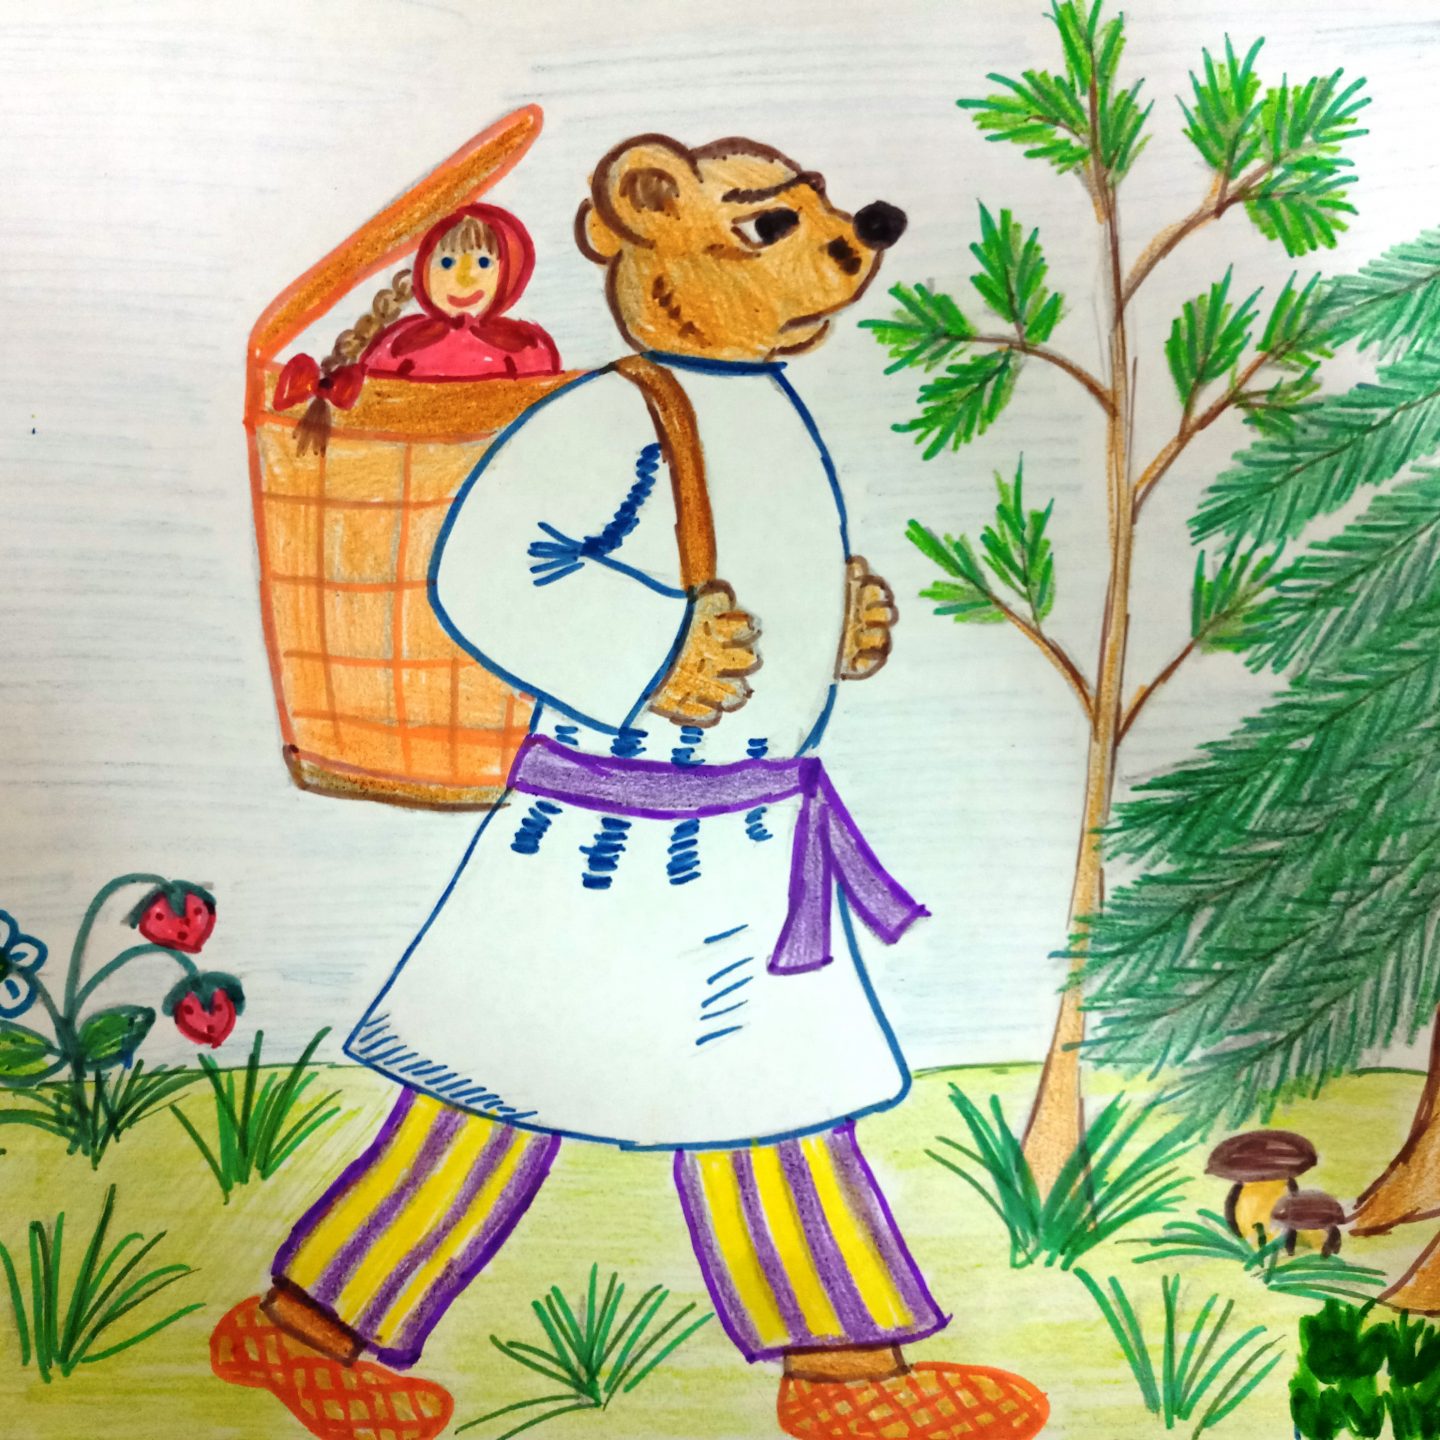 Сказки маша и медведь: Аудио сказка Маша и медведь. Слушать онлайн или скачать